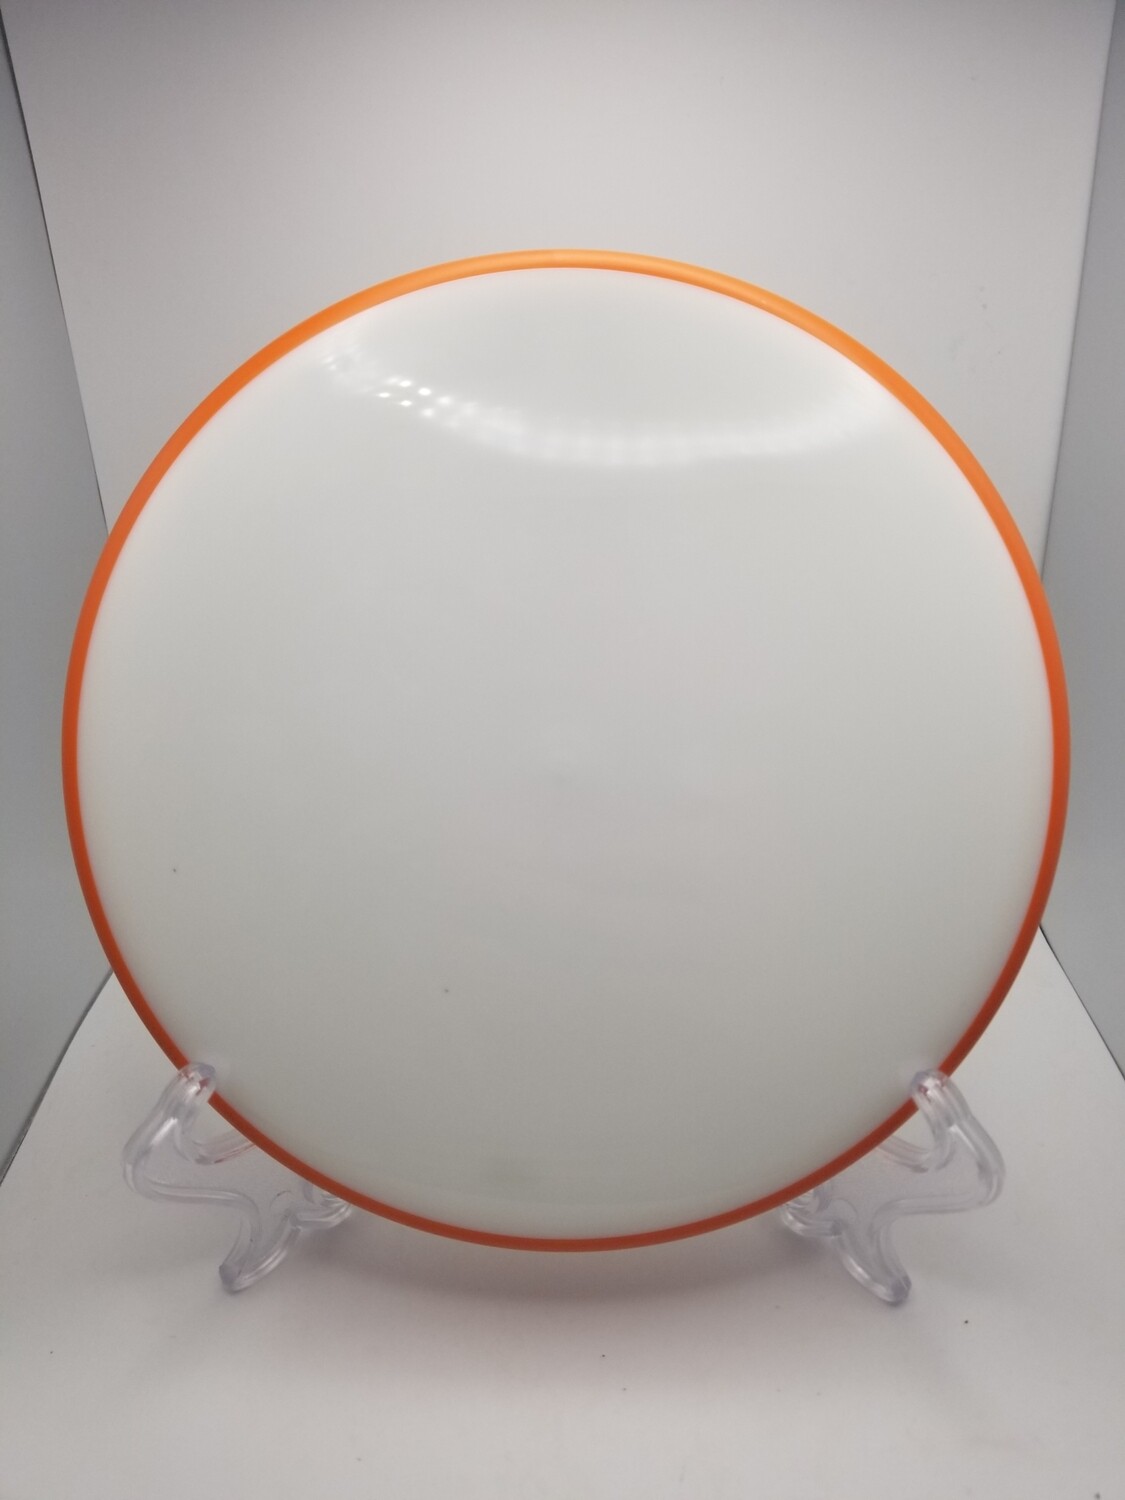 Axiom Discs Proxy Blank White Orange Rim Neutron 170-173g